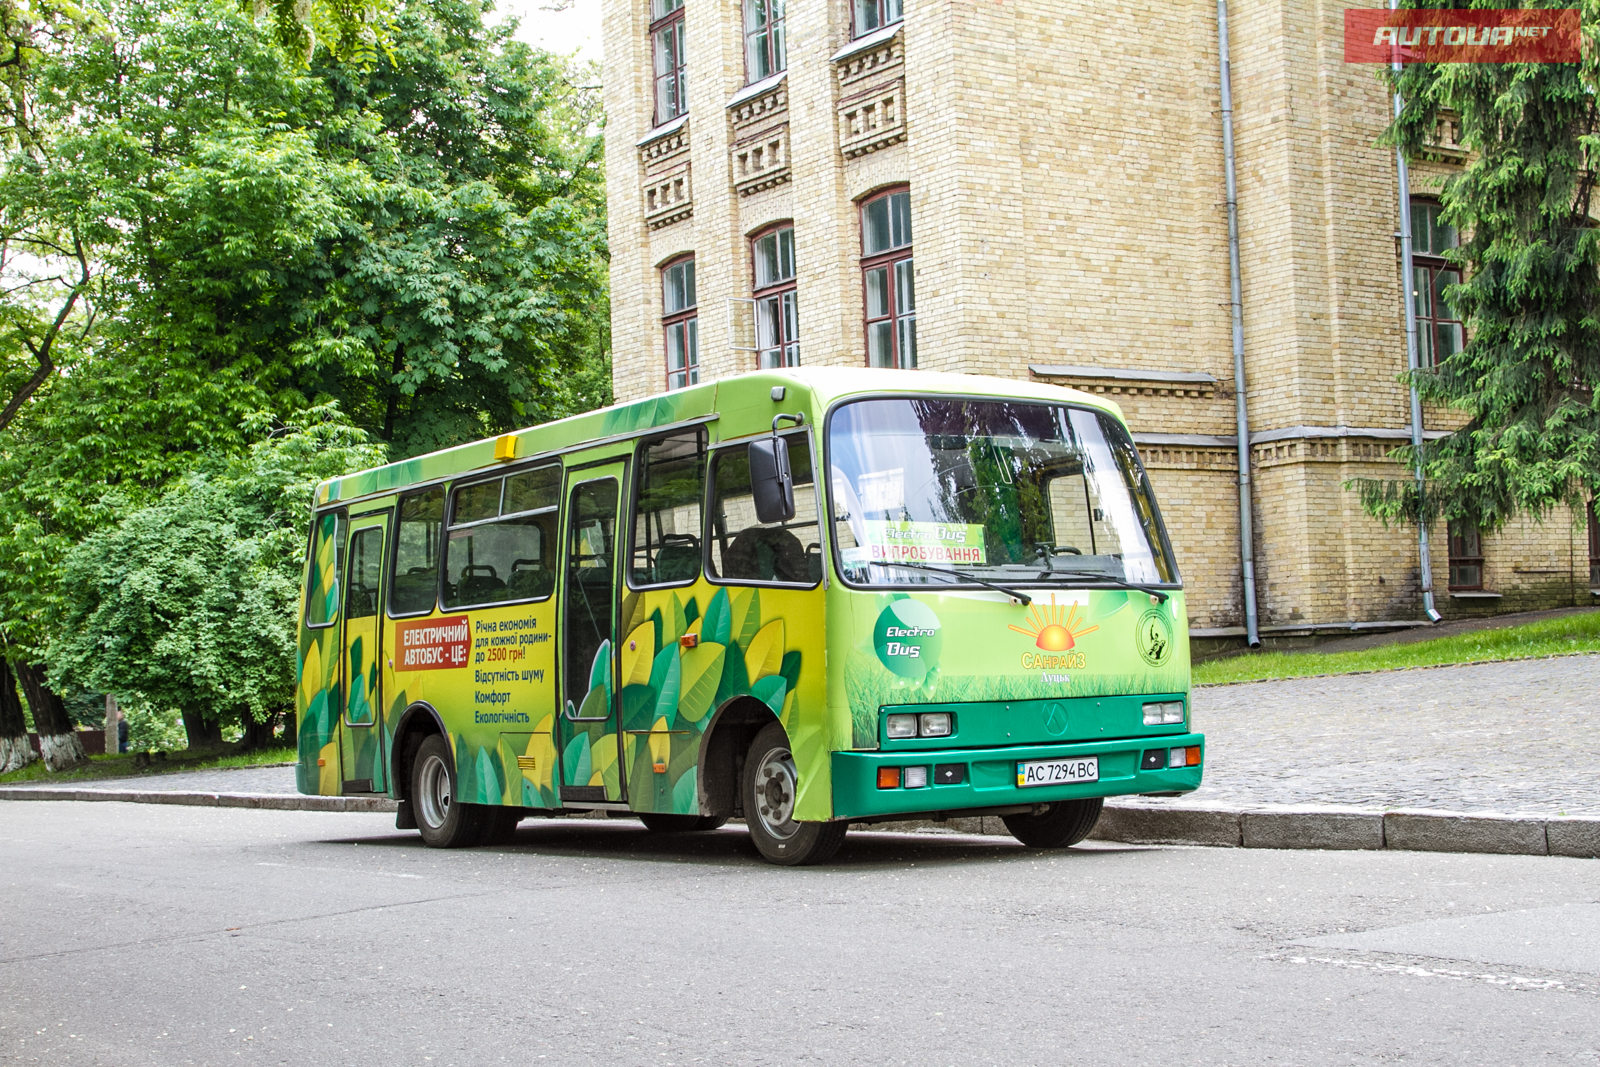 Имеет ли перспективы украинский электробус? 